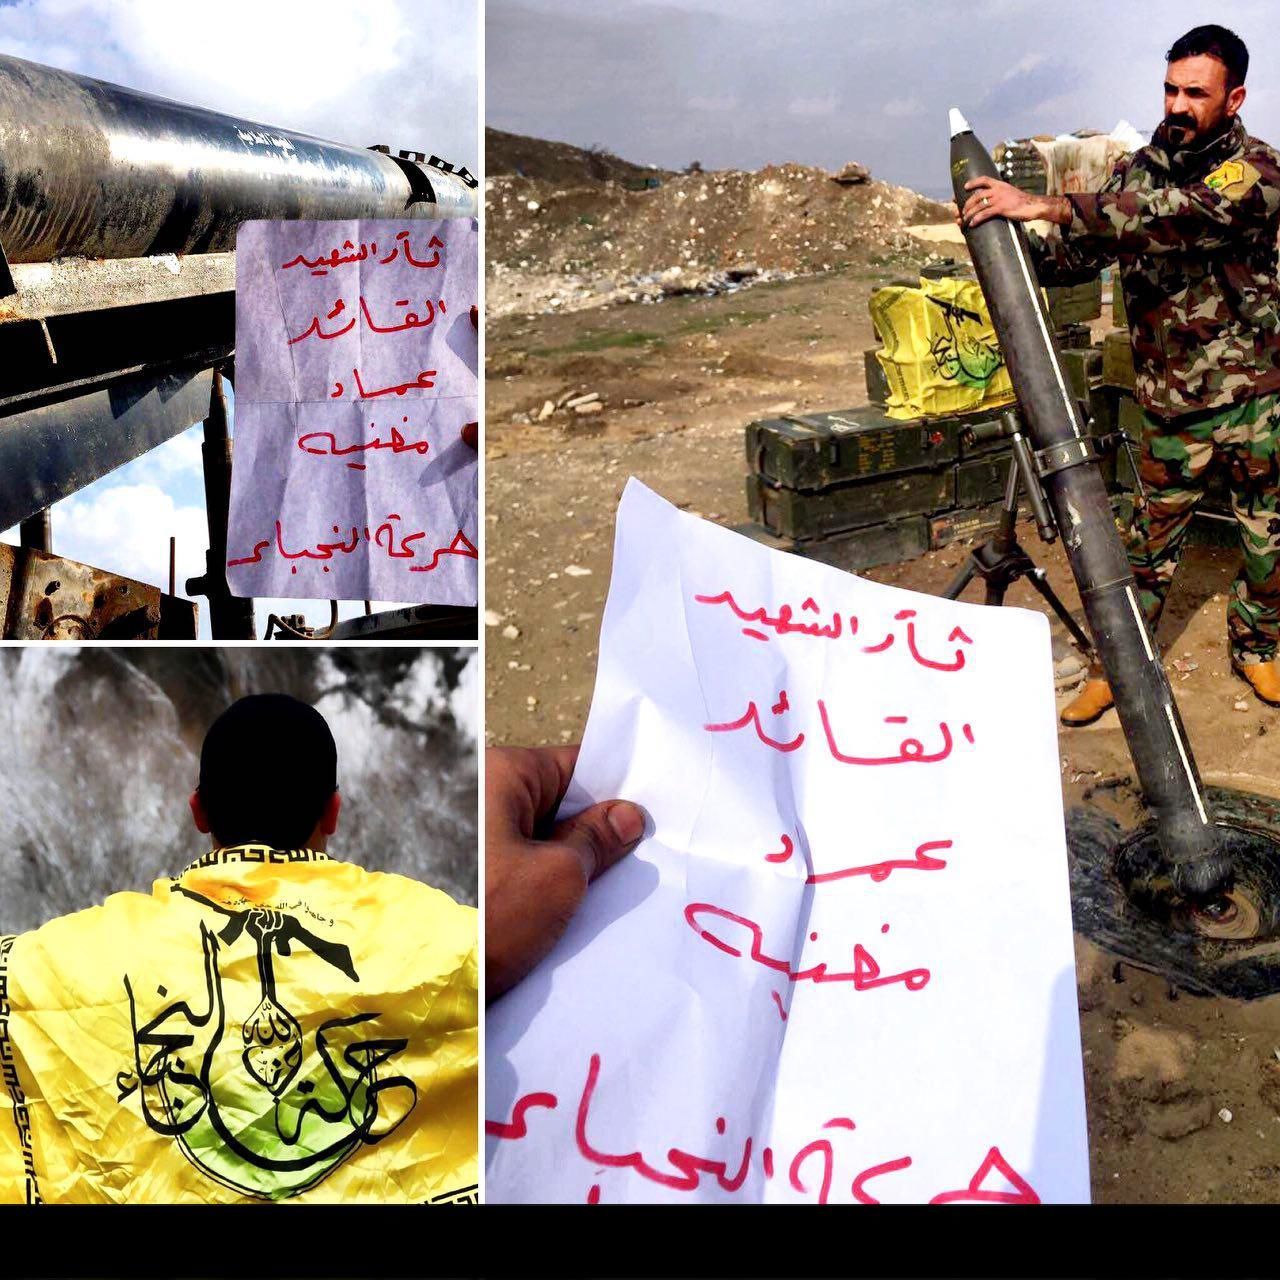 موشکباران داعش در عراق با رمز "عماد مغنیه"